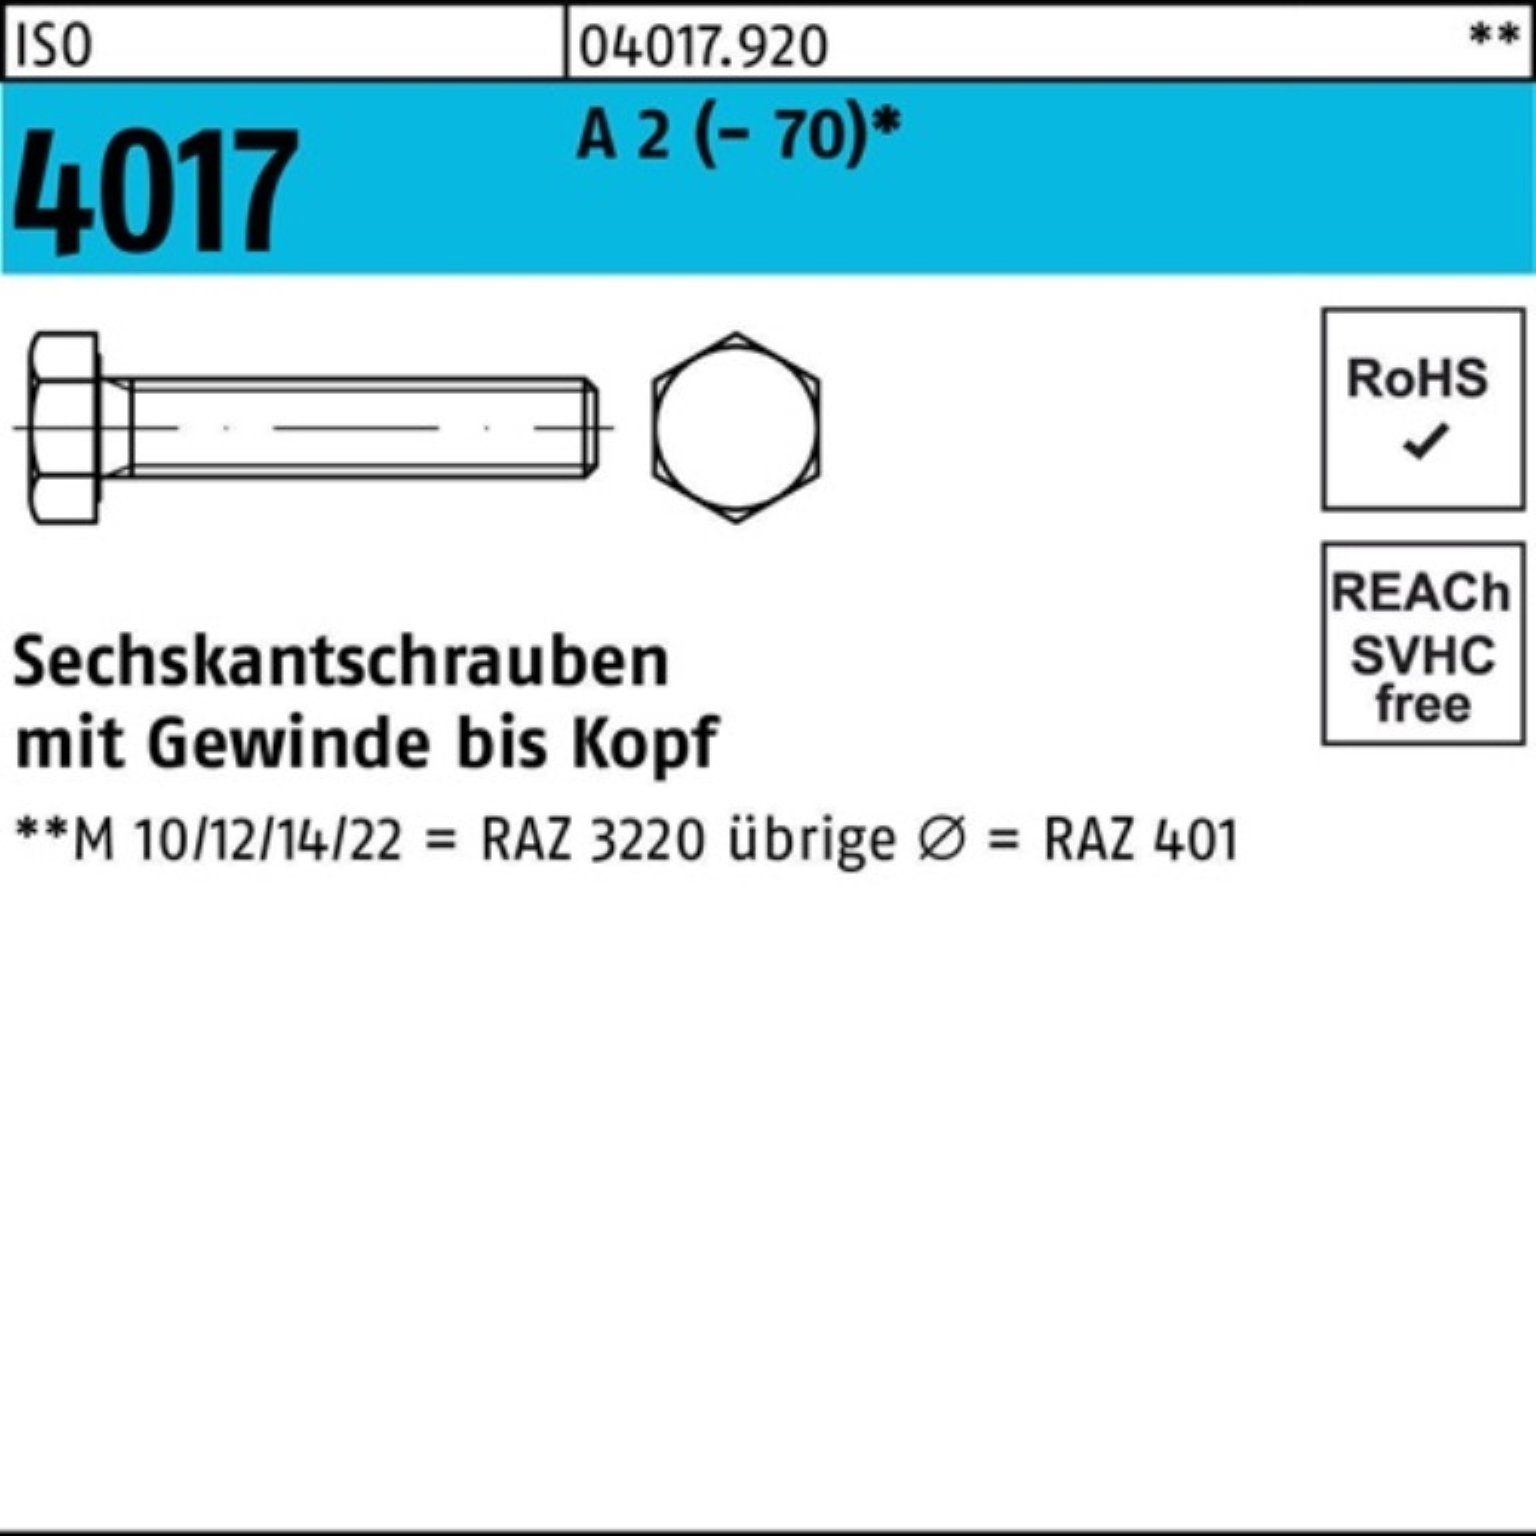 Bufab Sechskantschraube 100er Pack M10x 2 VG (70) ISO 4017 Sechskantschraube 50 Stück 100 A